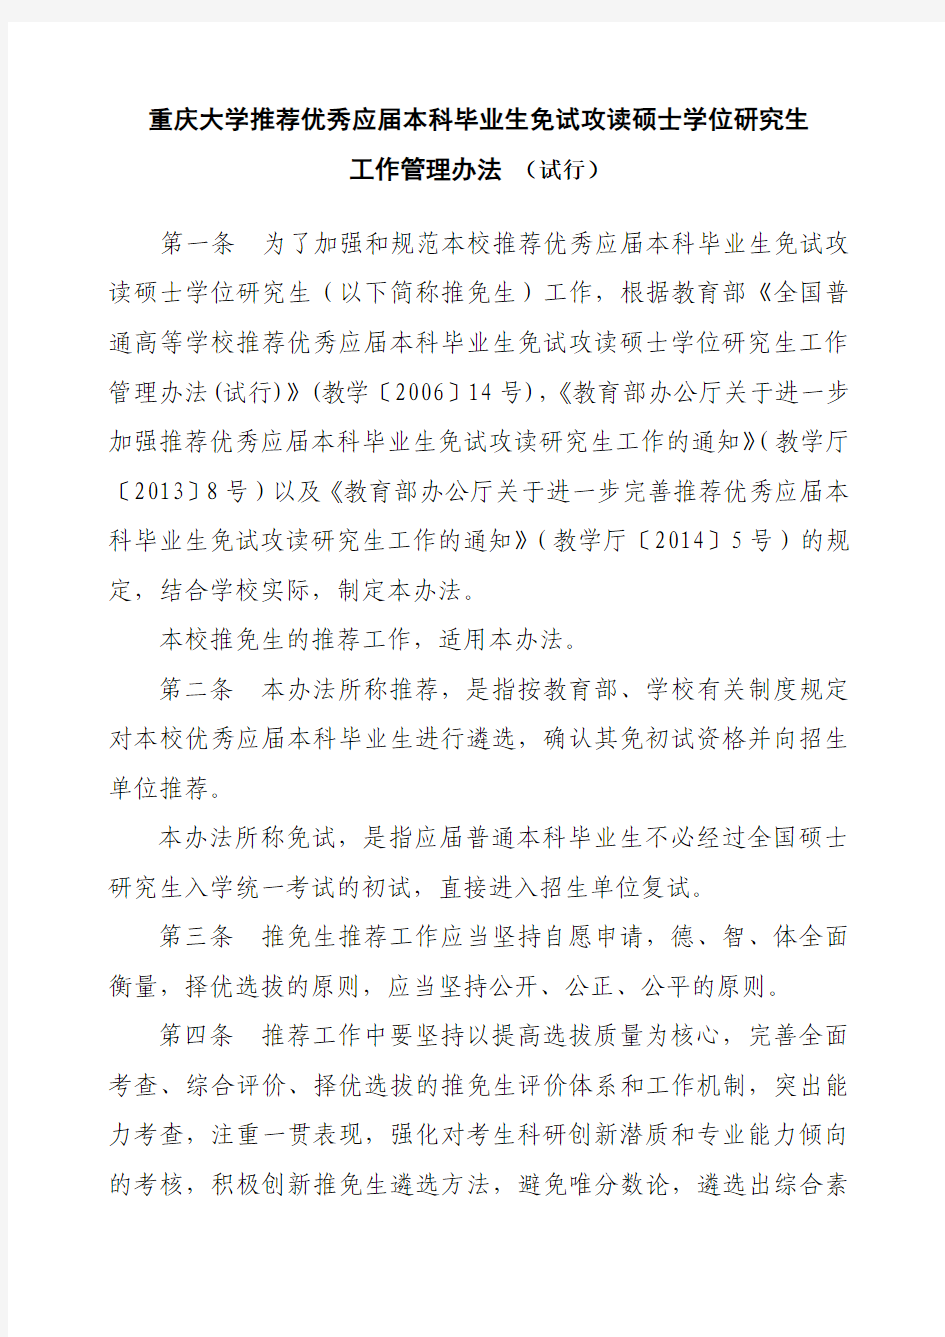 重庆大学推荐优秀应届本科毕业生免试攻读硕士学位研究生管理工作办法(定稿)